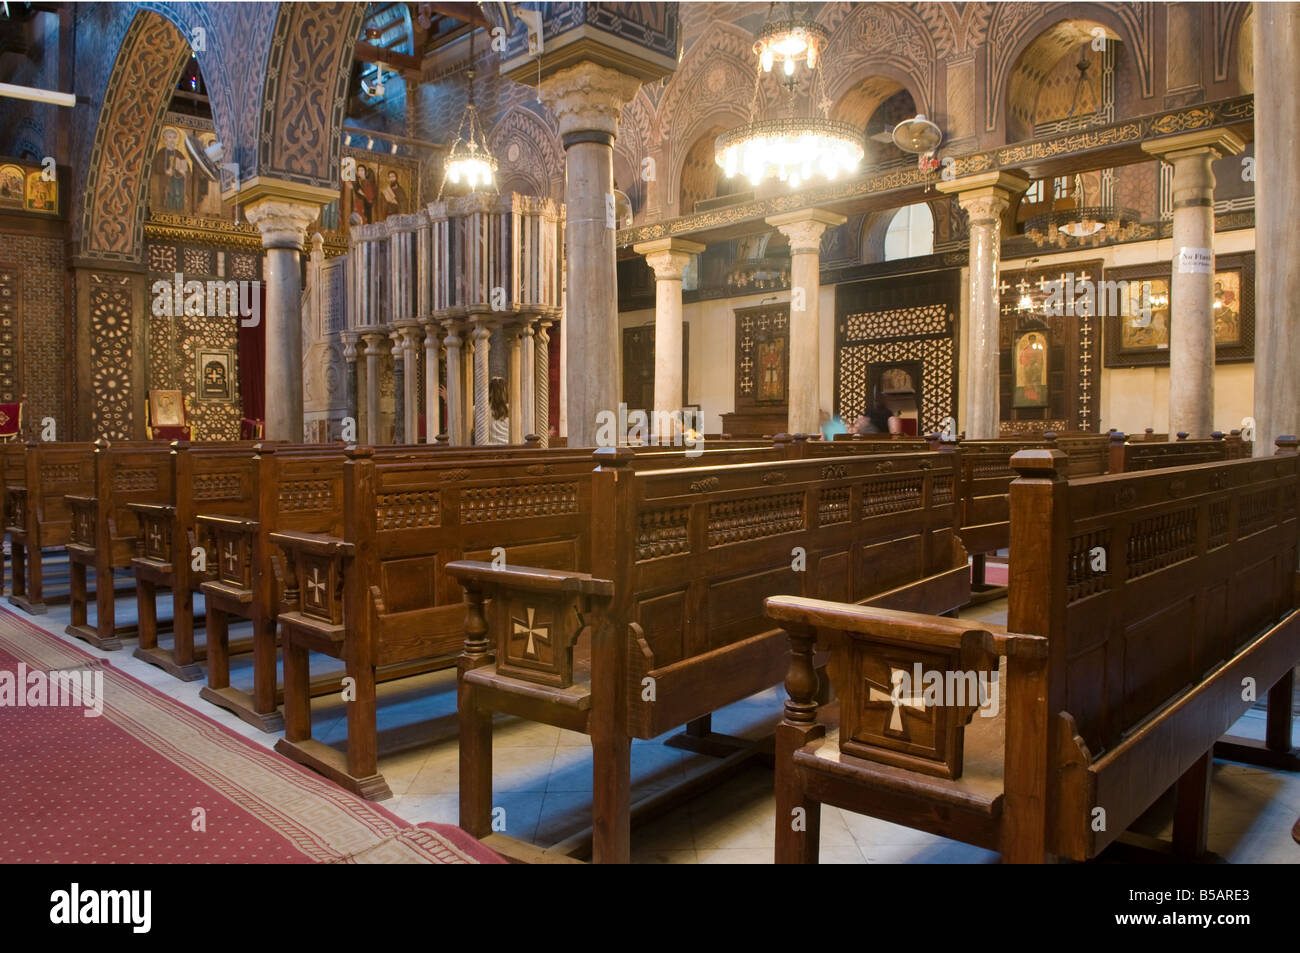 Das Innere der koptisch-orthodoxen Kirche der Heiligen Barbara in der Koptischen viertel Kairo Ägypten Stockfoto